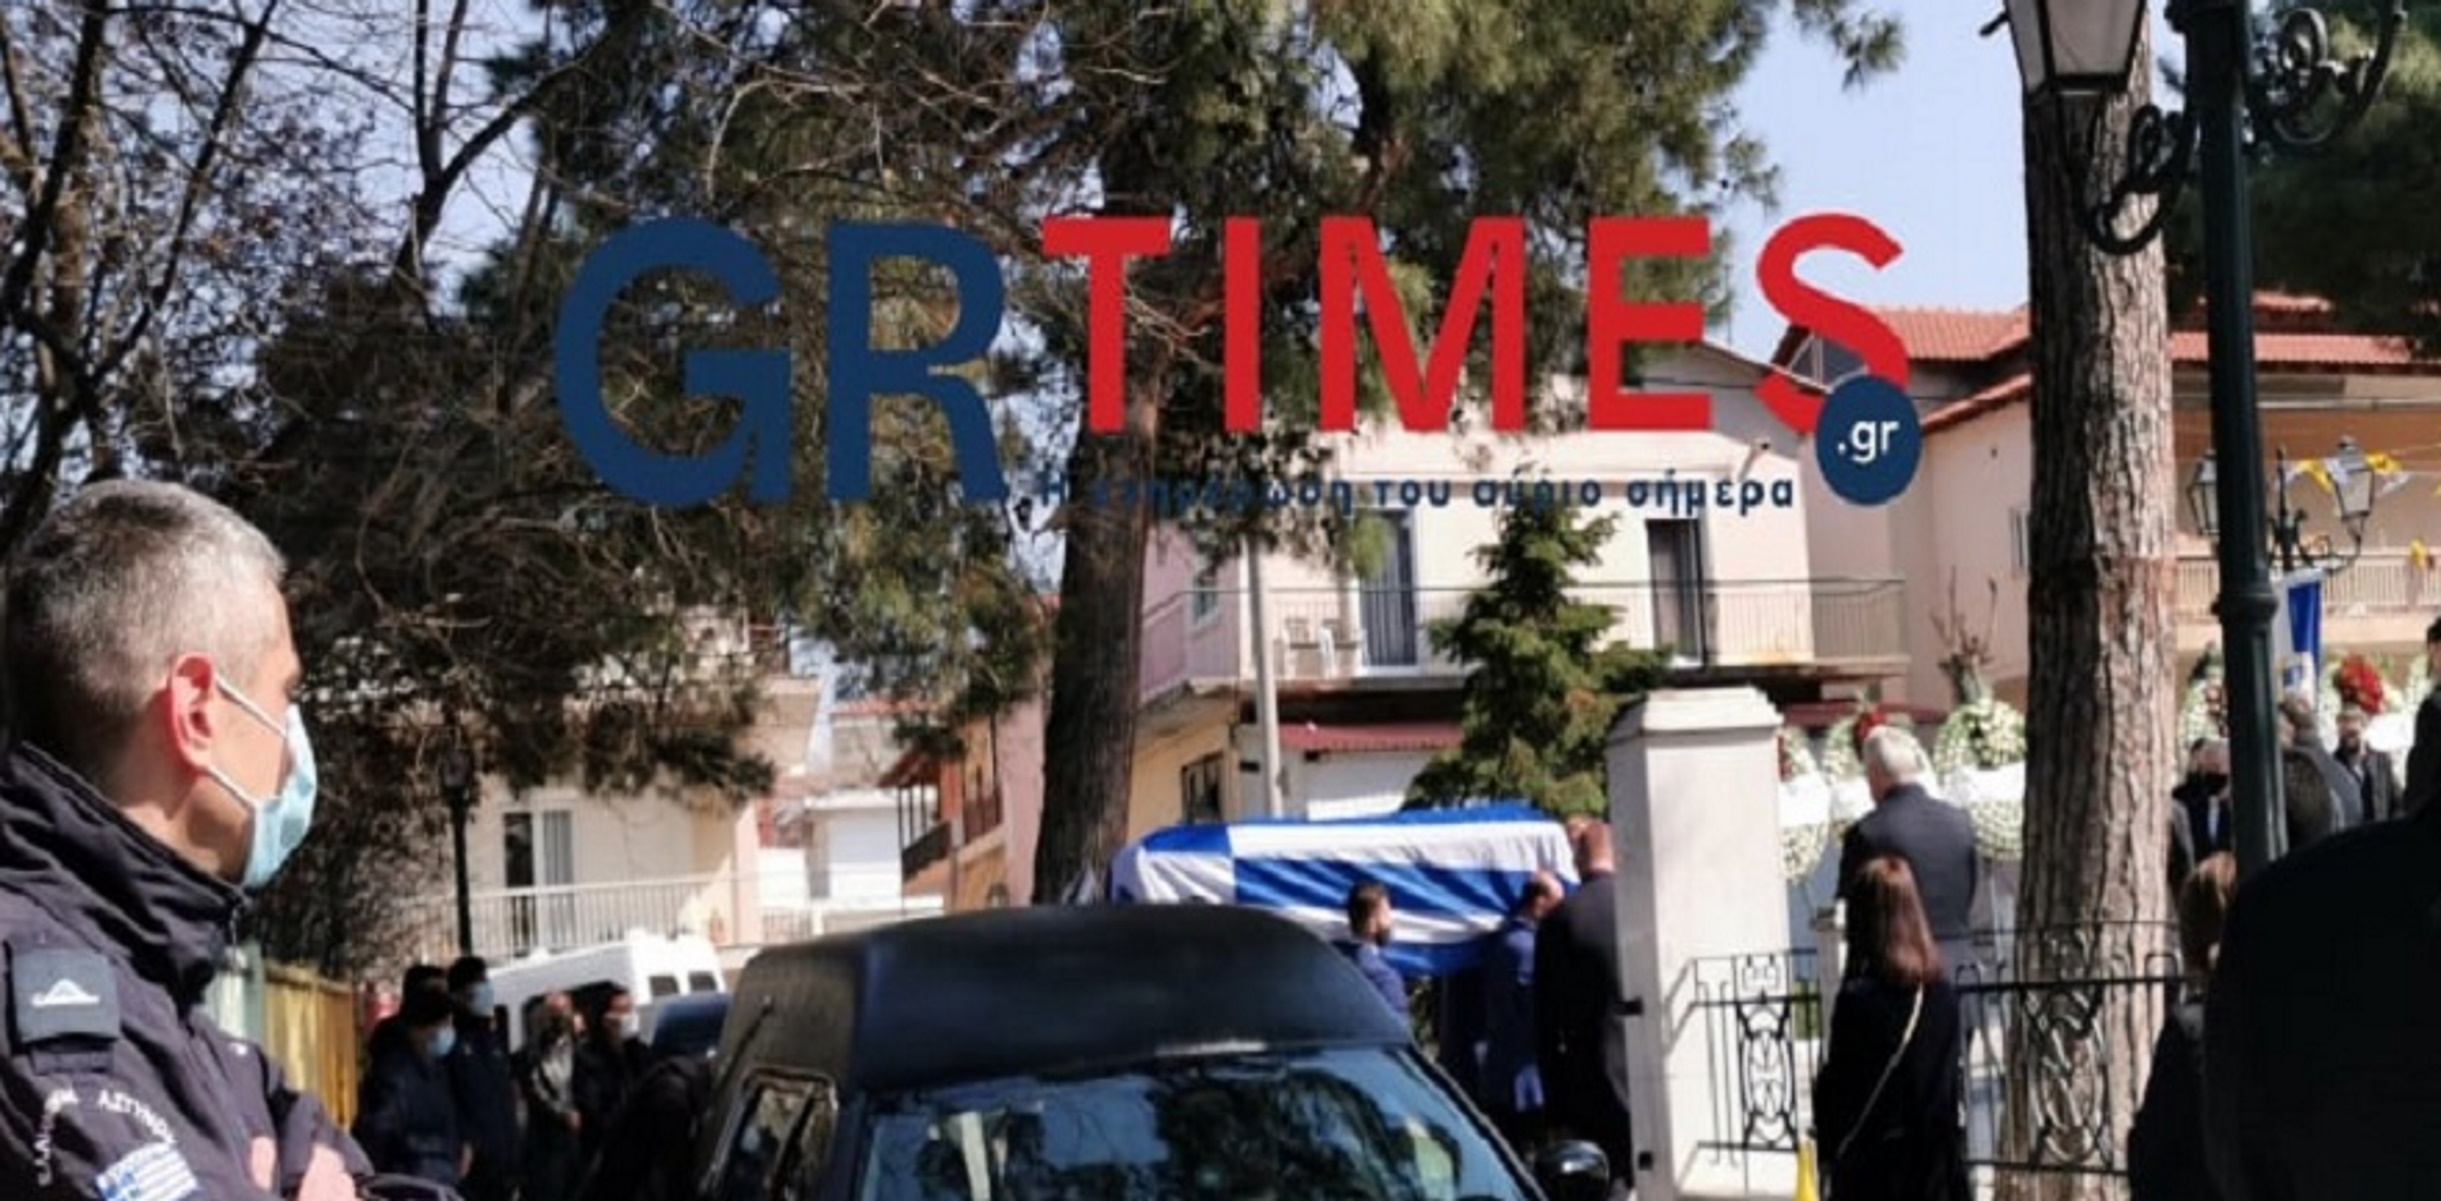 Θεσσαλονίκη – Μπόρις Μουζενίδης: Τυλιγμένο με τη γαλανόλευκη το φέρετρο – Ο κορονοϊός νίκησε τον οραματιστή επιχειρηματία